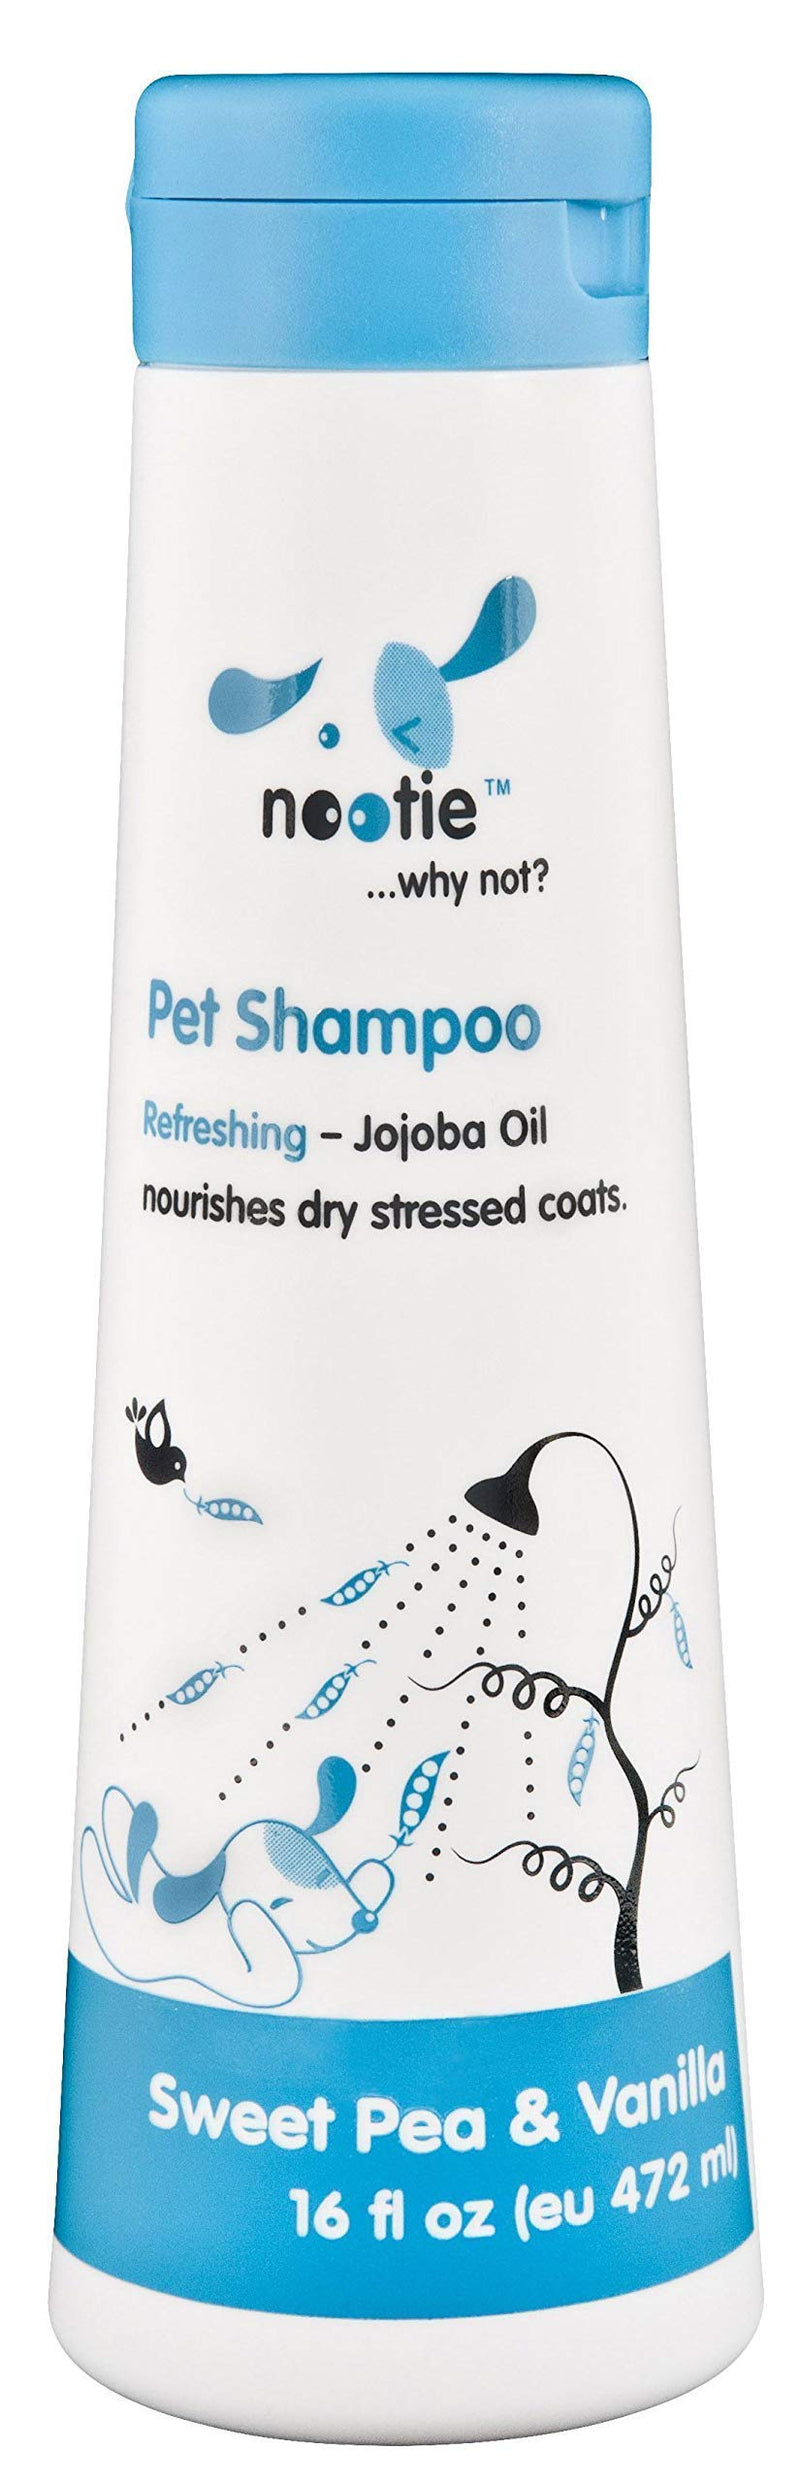 [Australia] - Nootie-jojoba oil Pet Shampoo, 1 Unit 16oz,Sweet Pea & Vanilla 